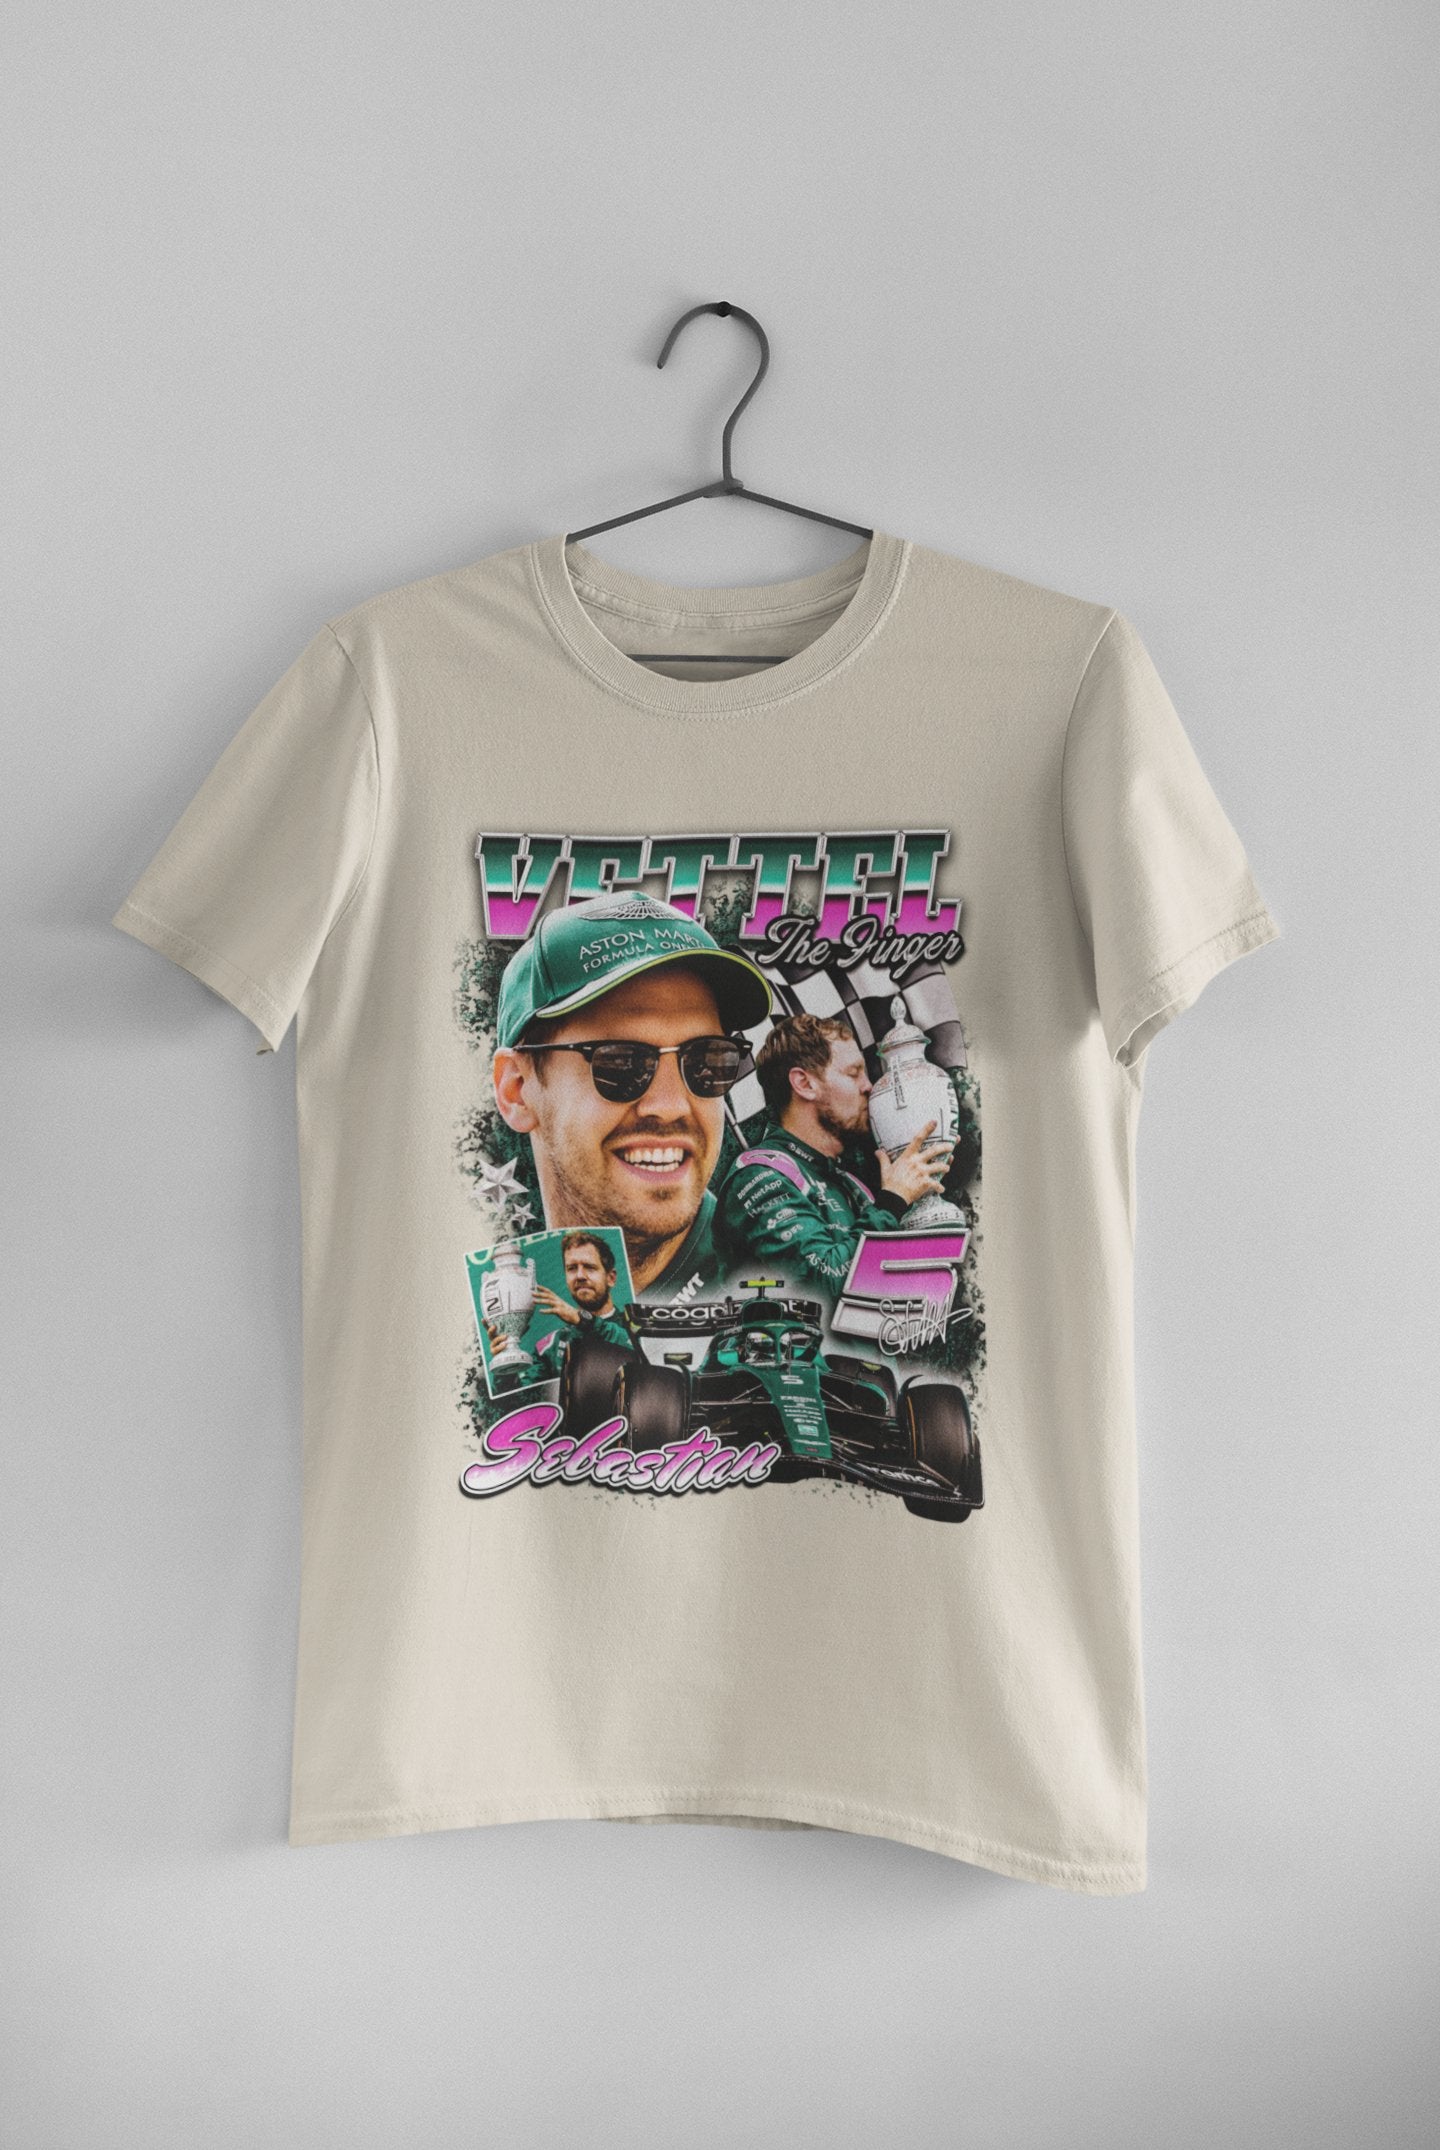 Sebastian Vettel - Unisex t-shirt - Modern Vintage Apparel